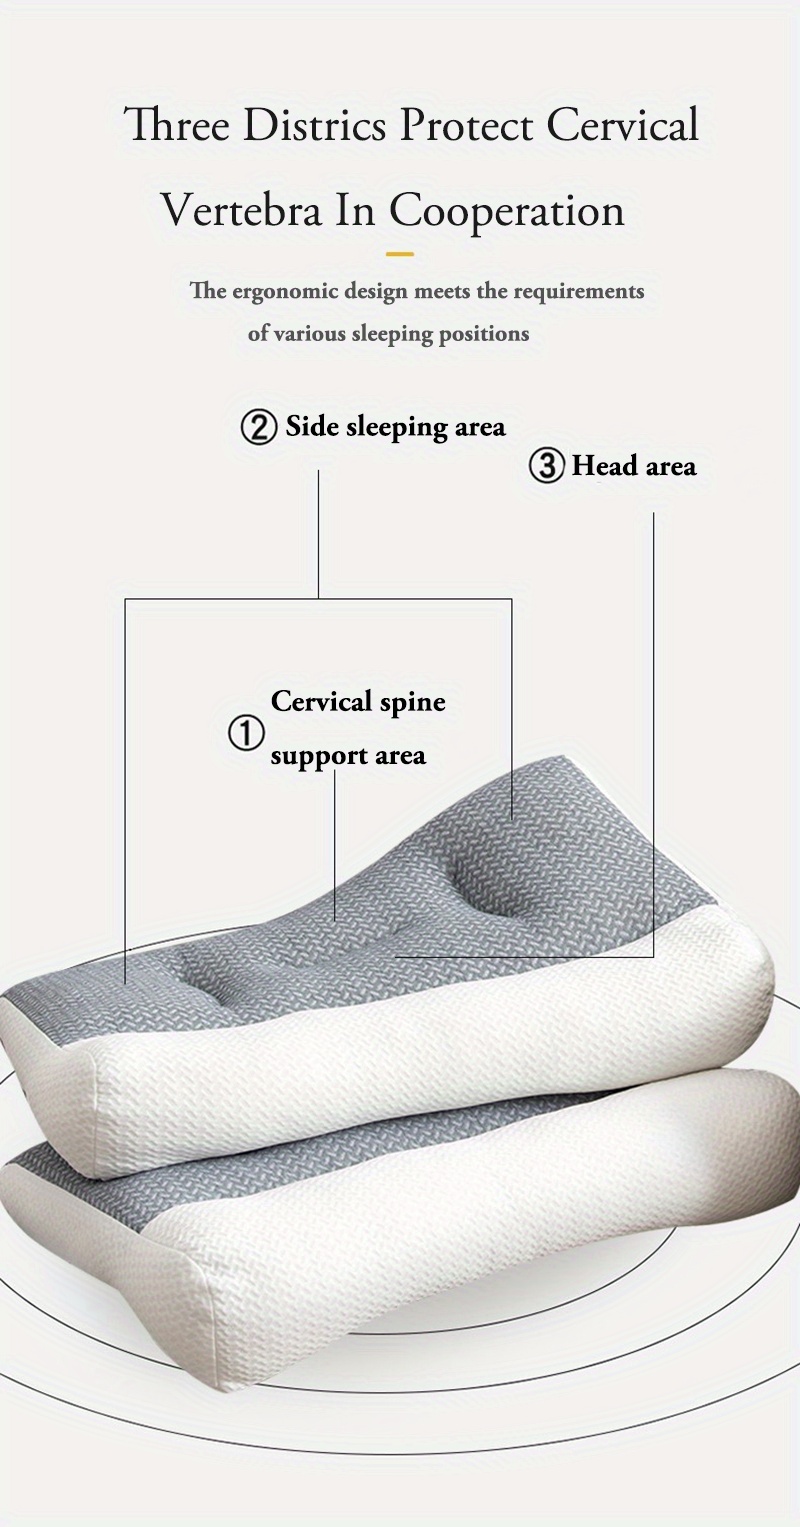 1 oreiller cervical pour dormir, design ergonomique répondant aux